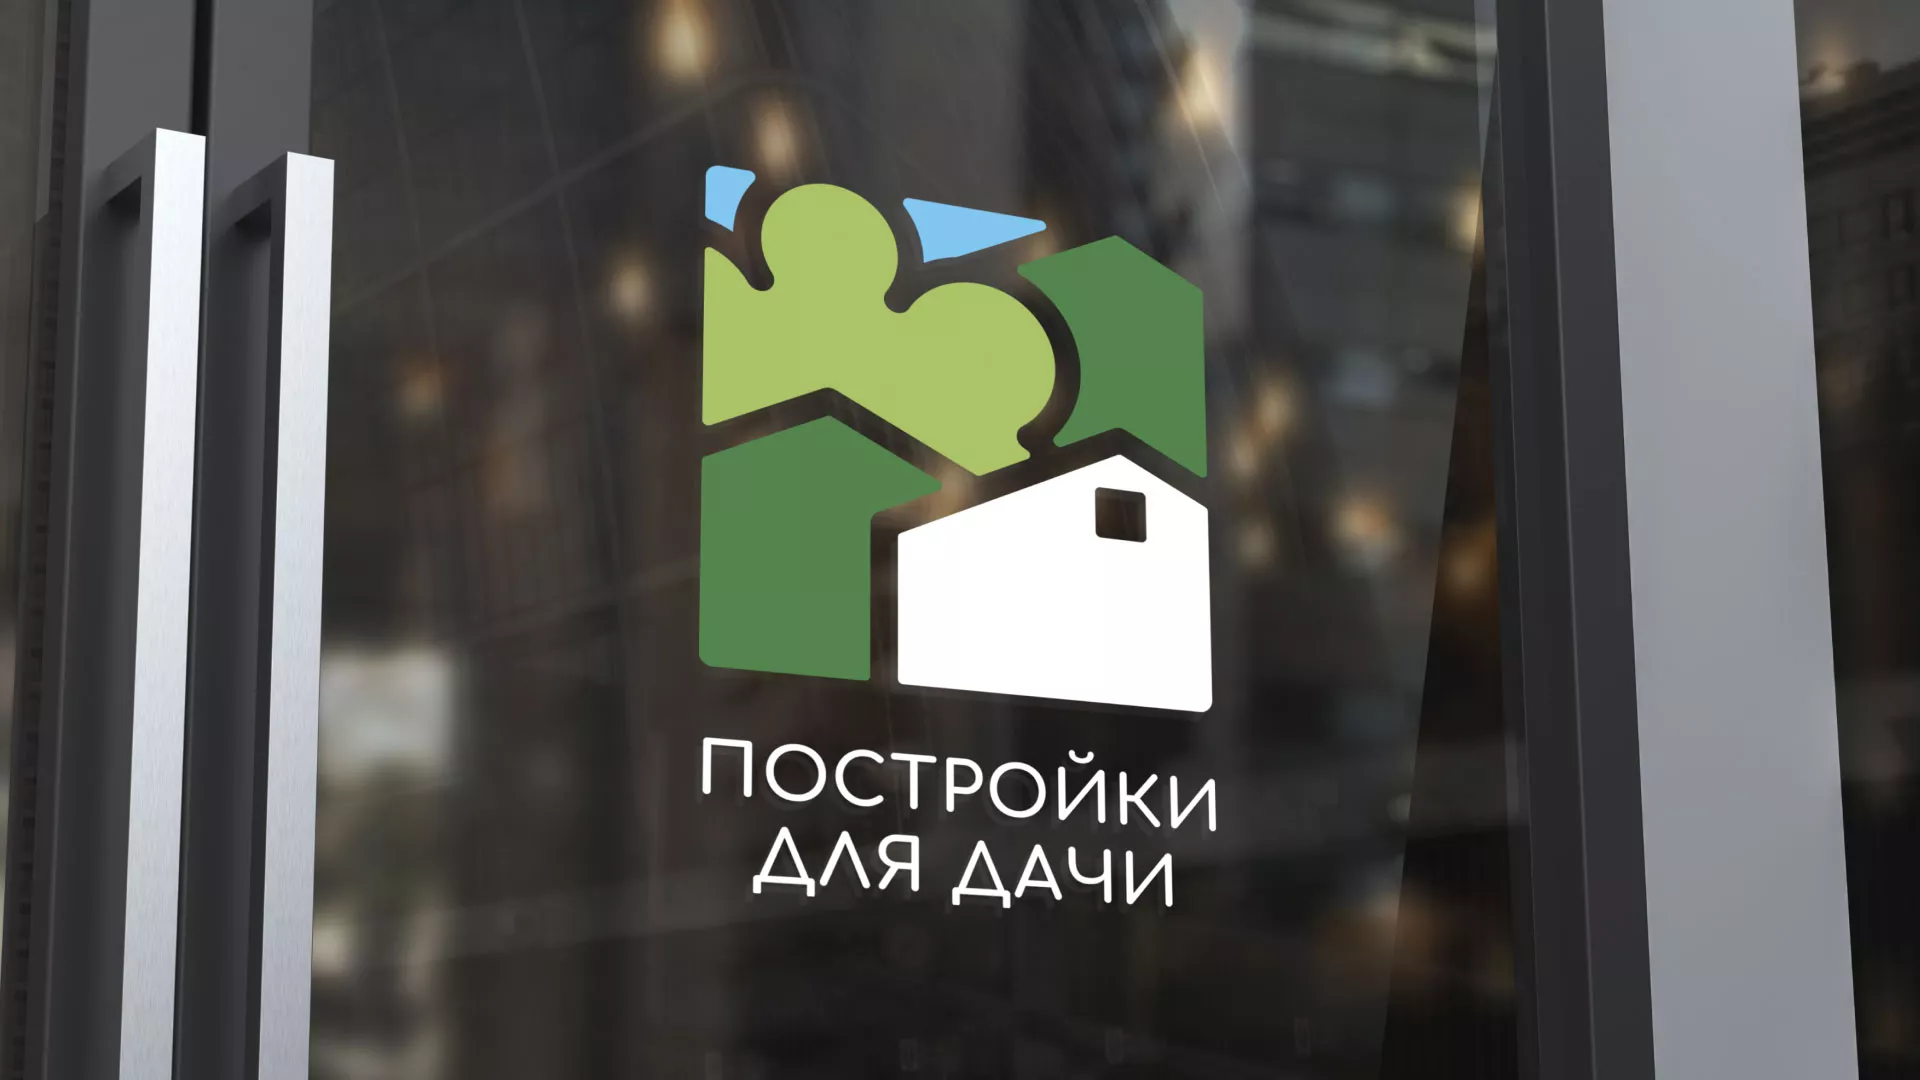 Разработка логотипа в Удачном для компании «Постройки для дачи»